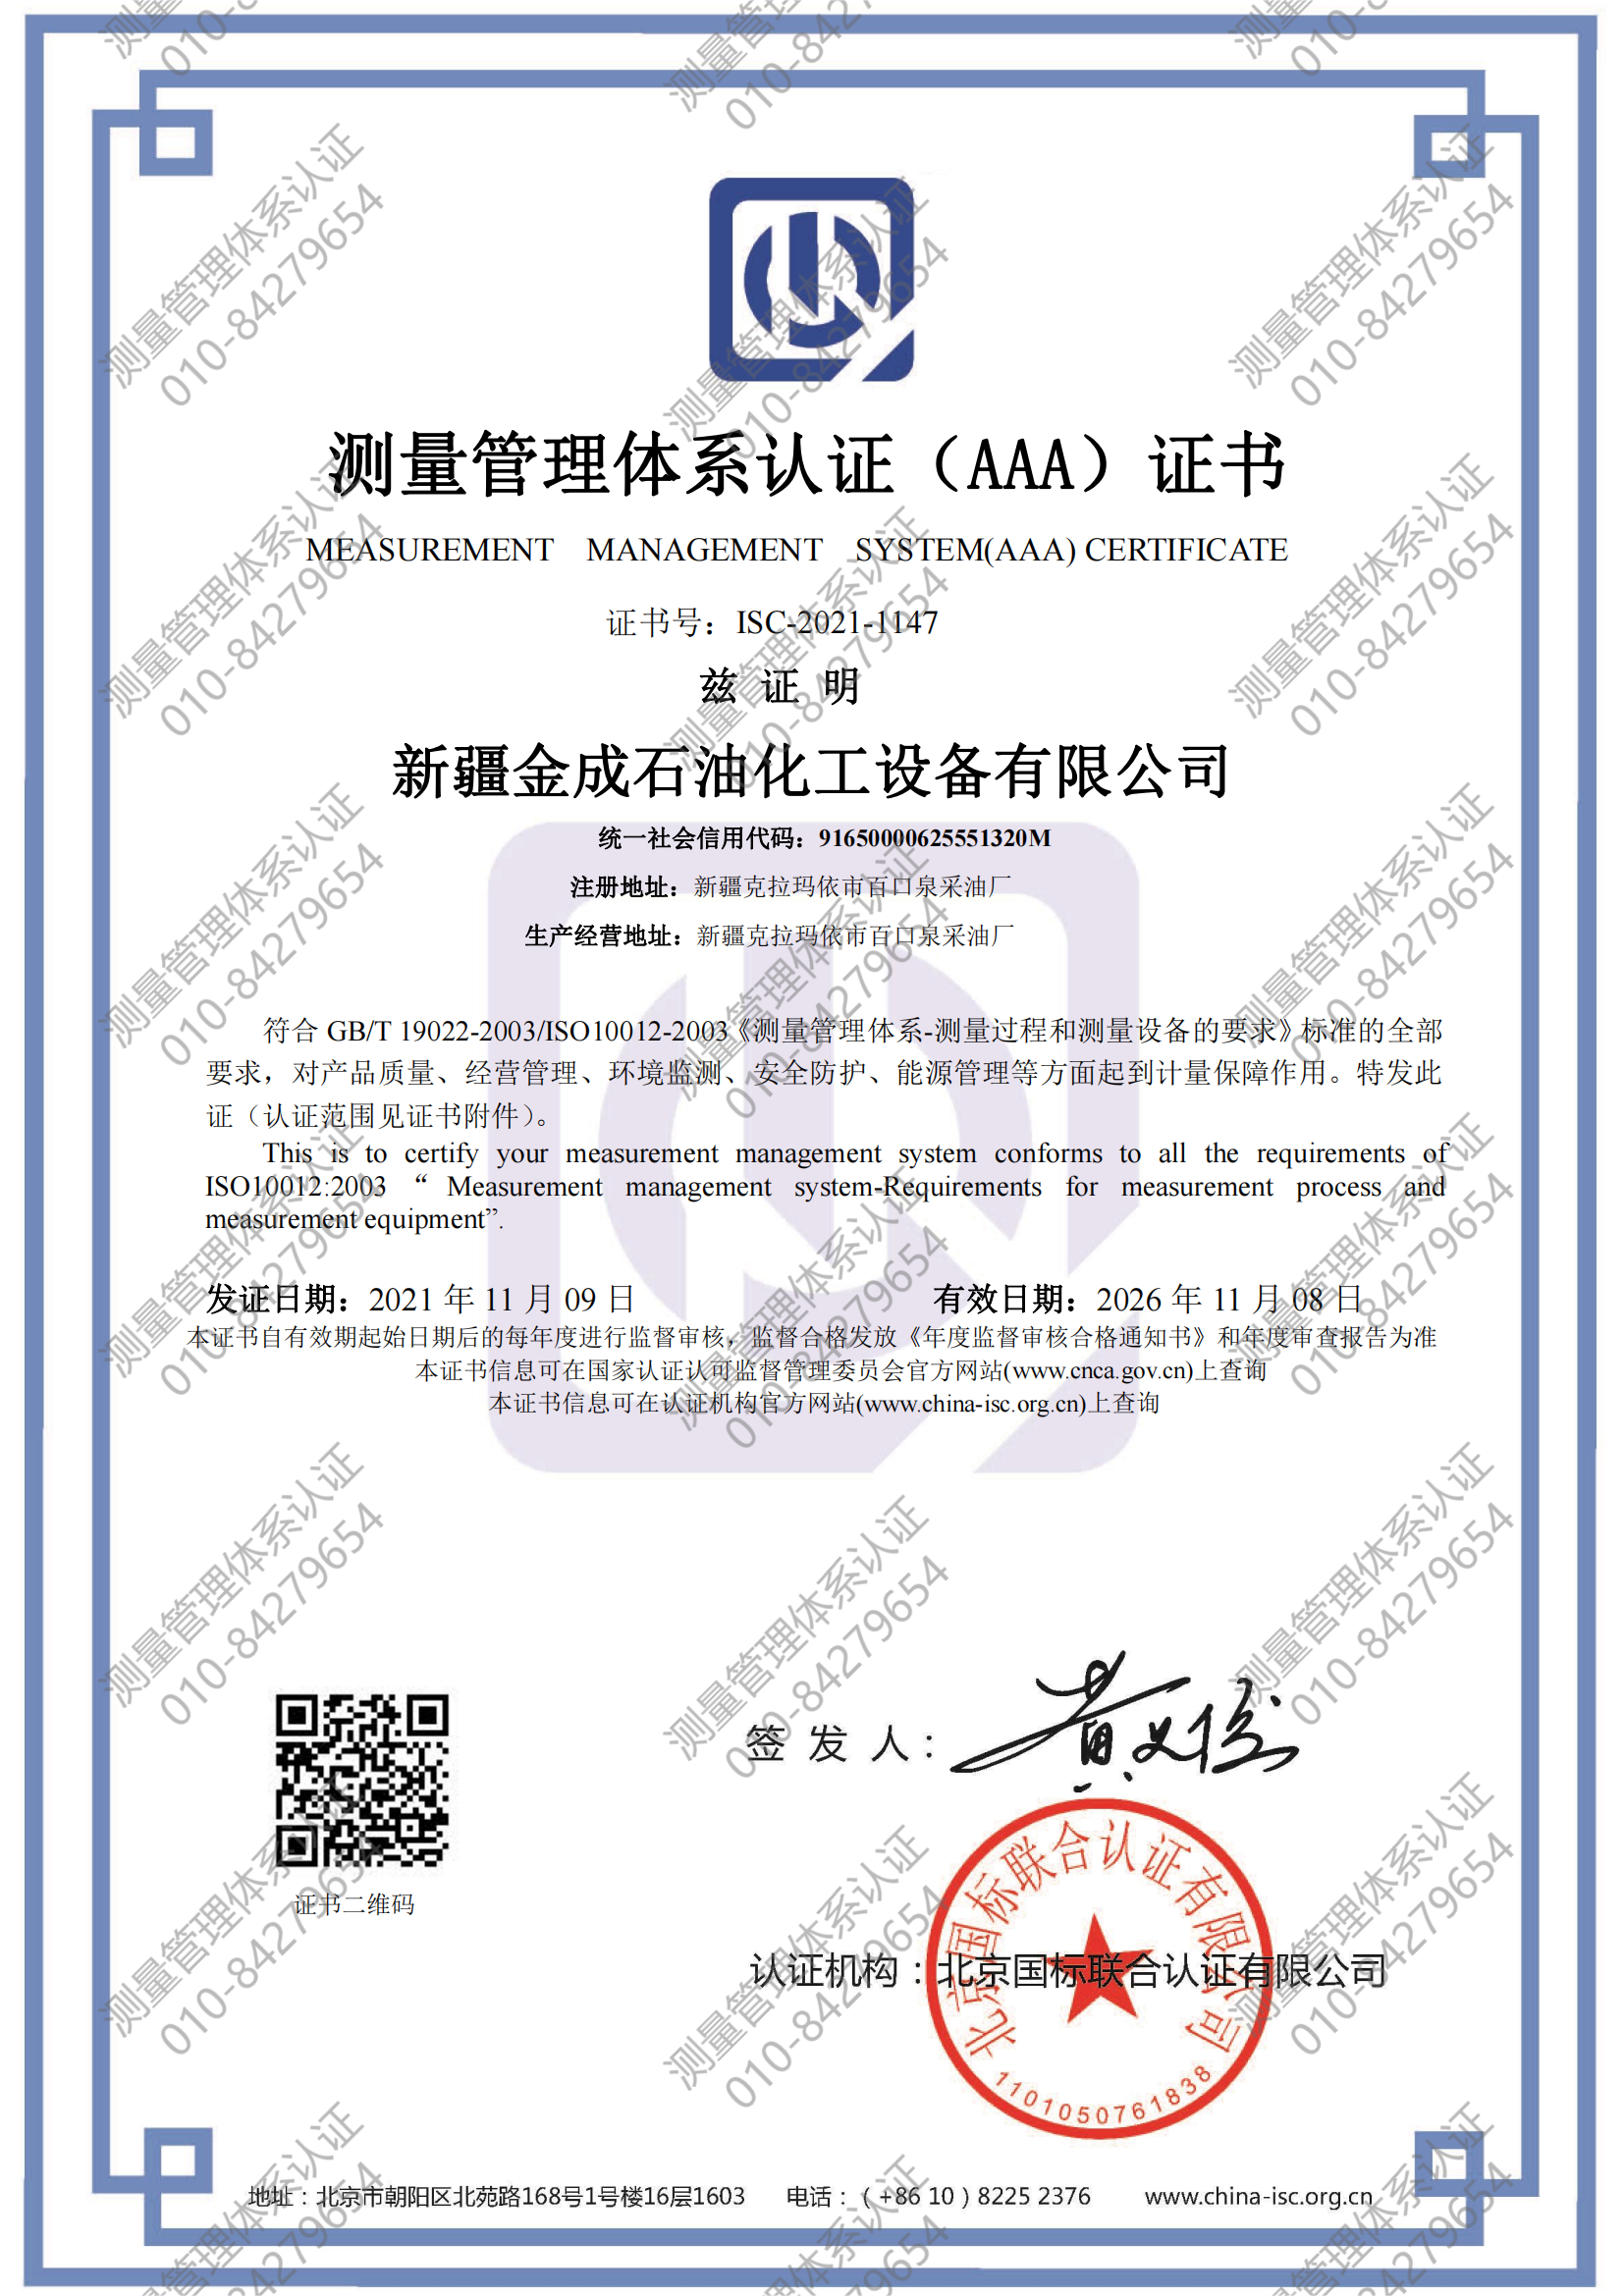 新疆金成石油化工设备有限公司喜获“测量管理体系认证（AAA）证书”